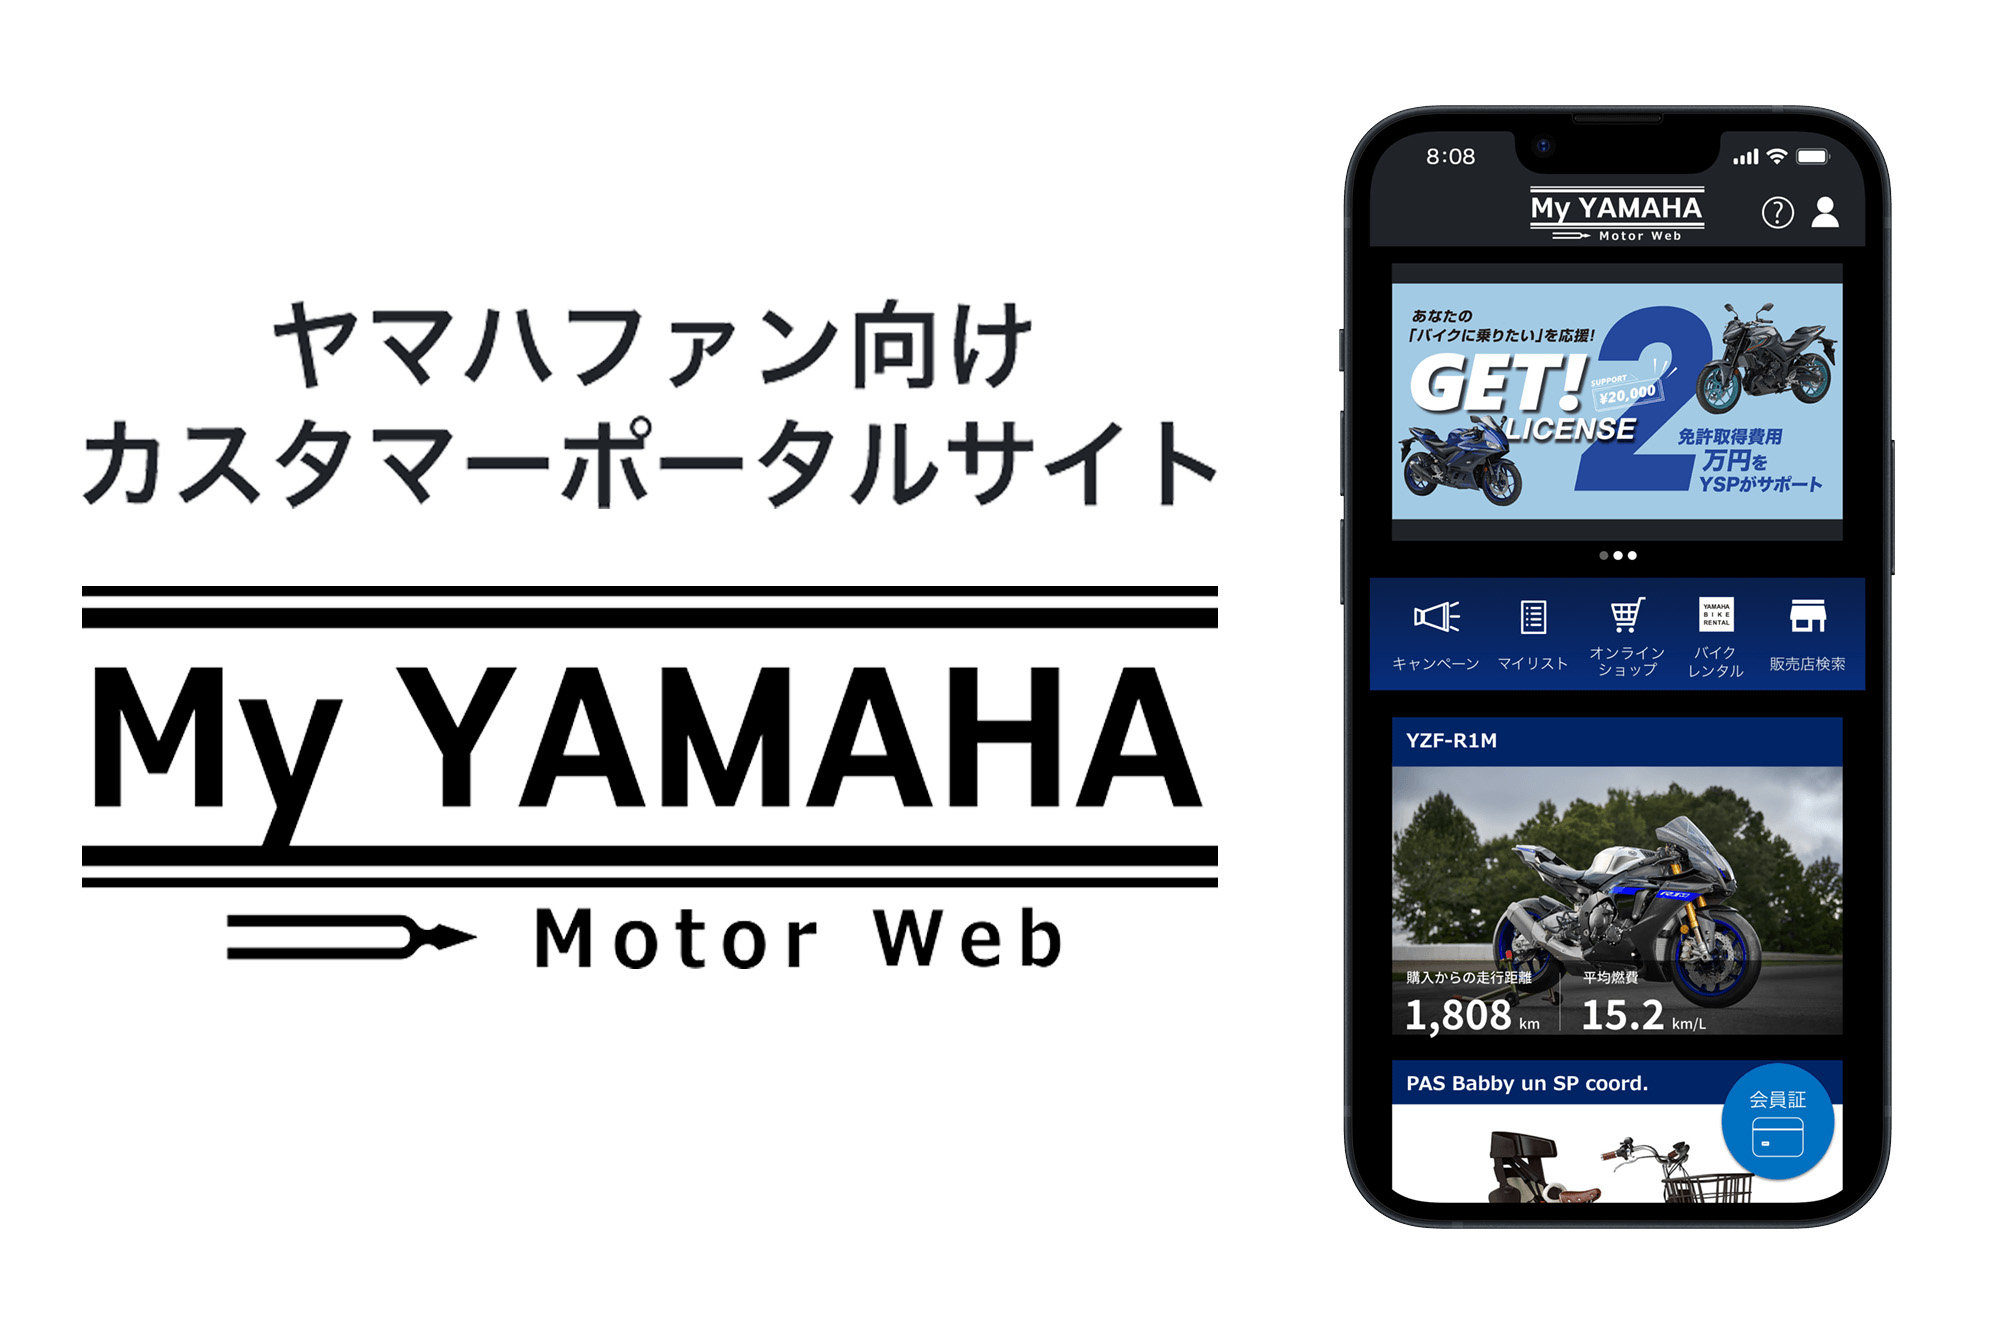 ヤマハファン向けカスタマーポータルサイト「My Yamaha Motor Web」の会員様（現地登録OK）を対象に、当日ヤマハブースにてチェックインいただくと、ライダーのサイン入りグッズなどが当たるガラポンも実施します。ヤマハファンブースへお越しの際は、MY YAMAHA Motor Webに会員登録をしてください。